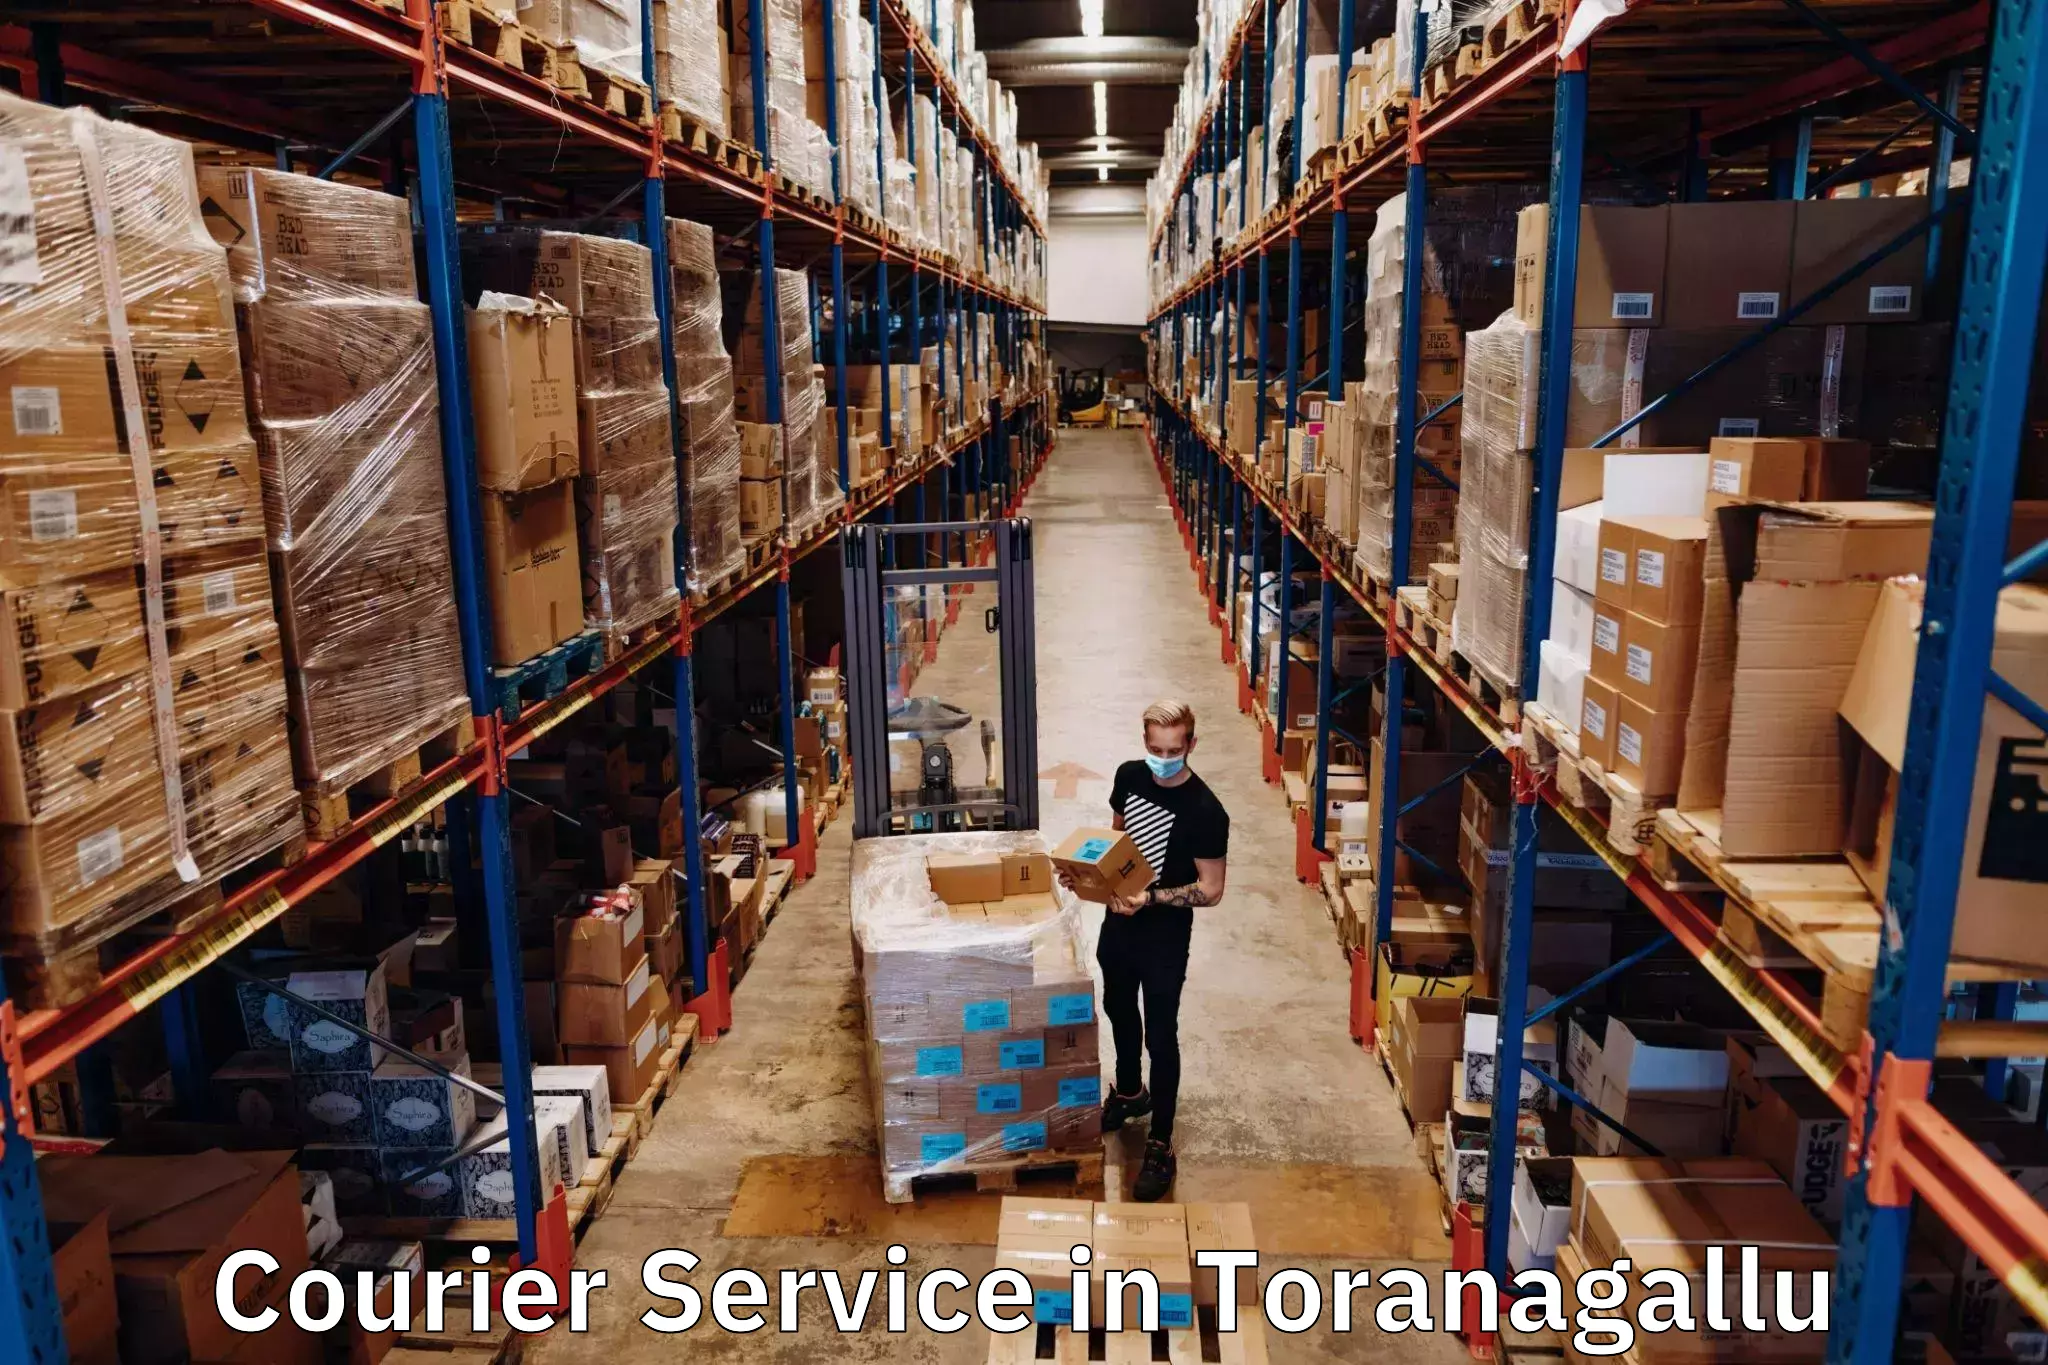 Innovative shipping solutions in Toranagallu